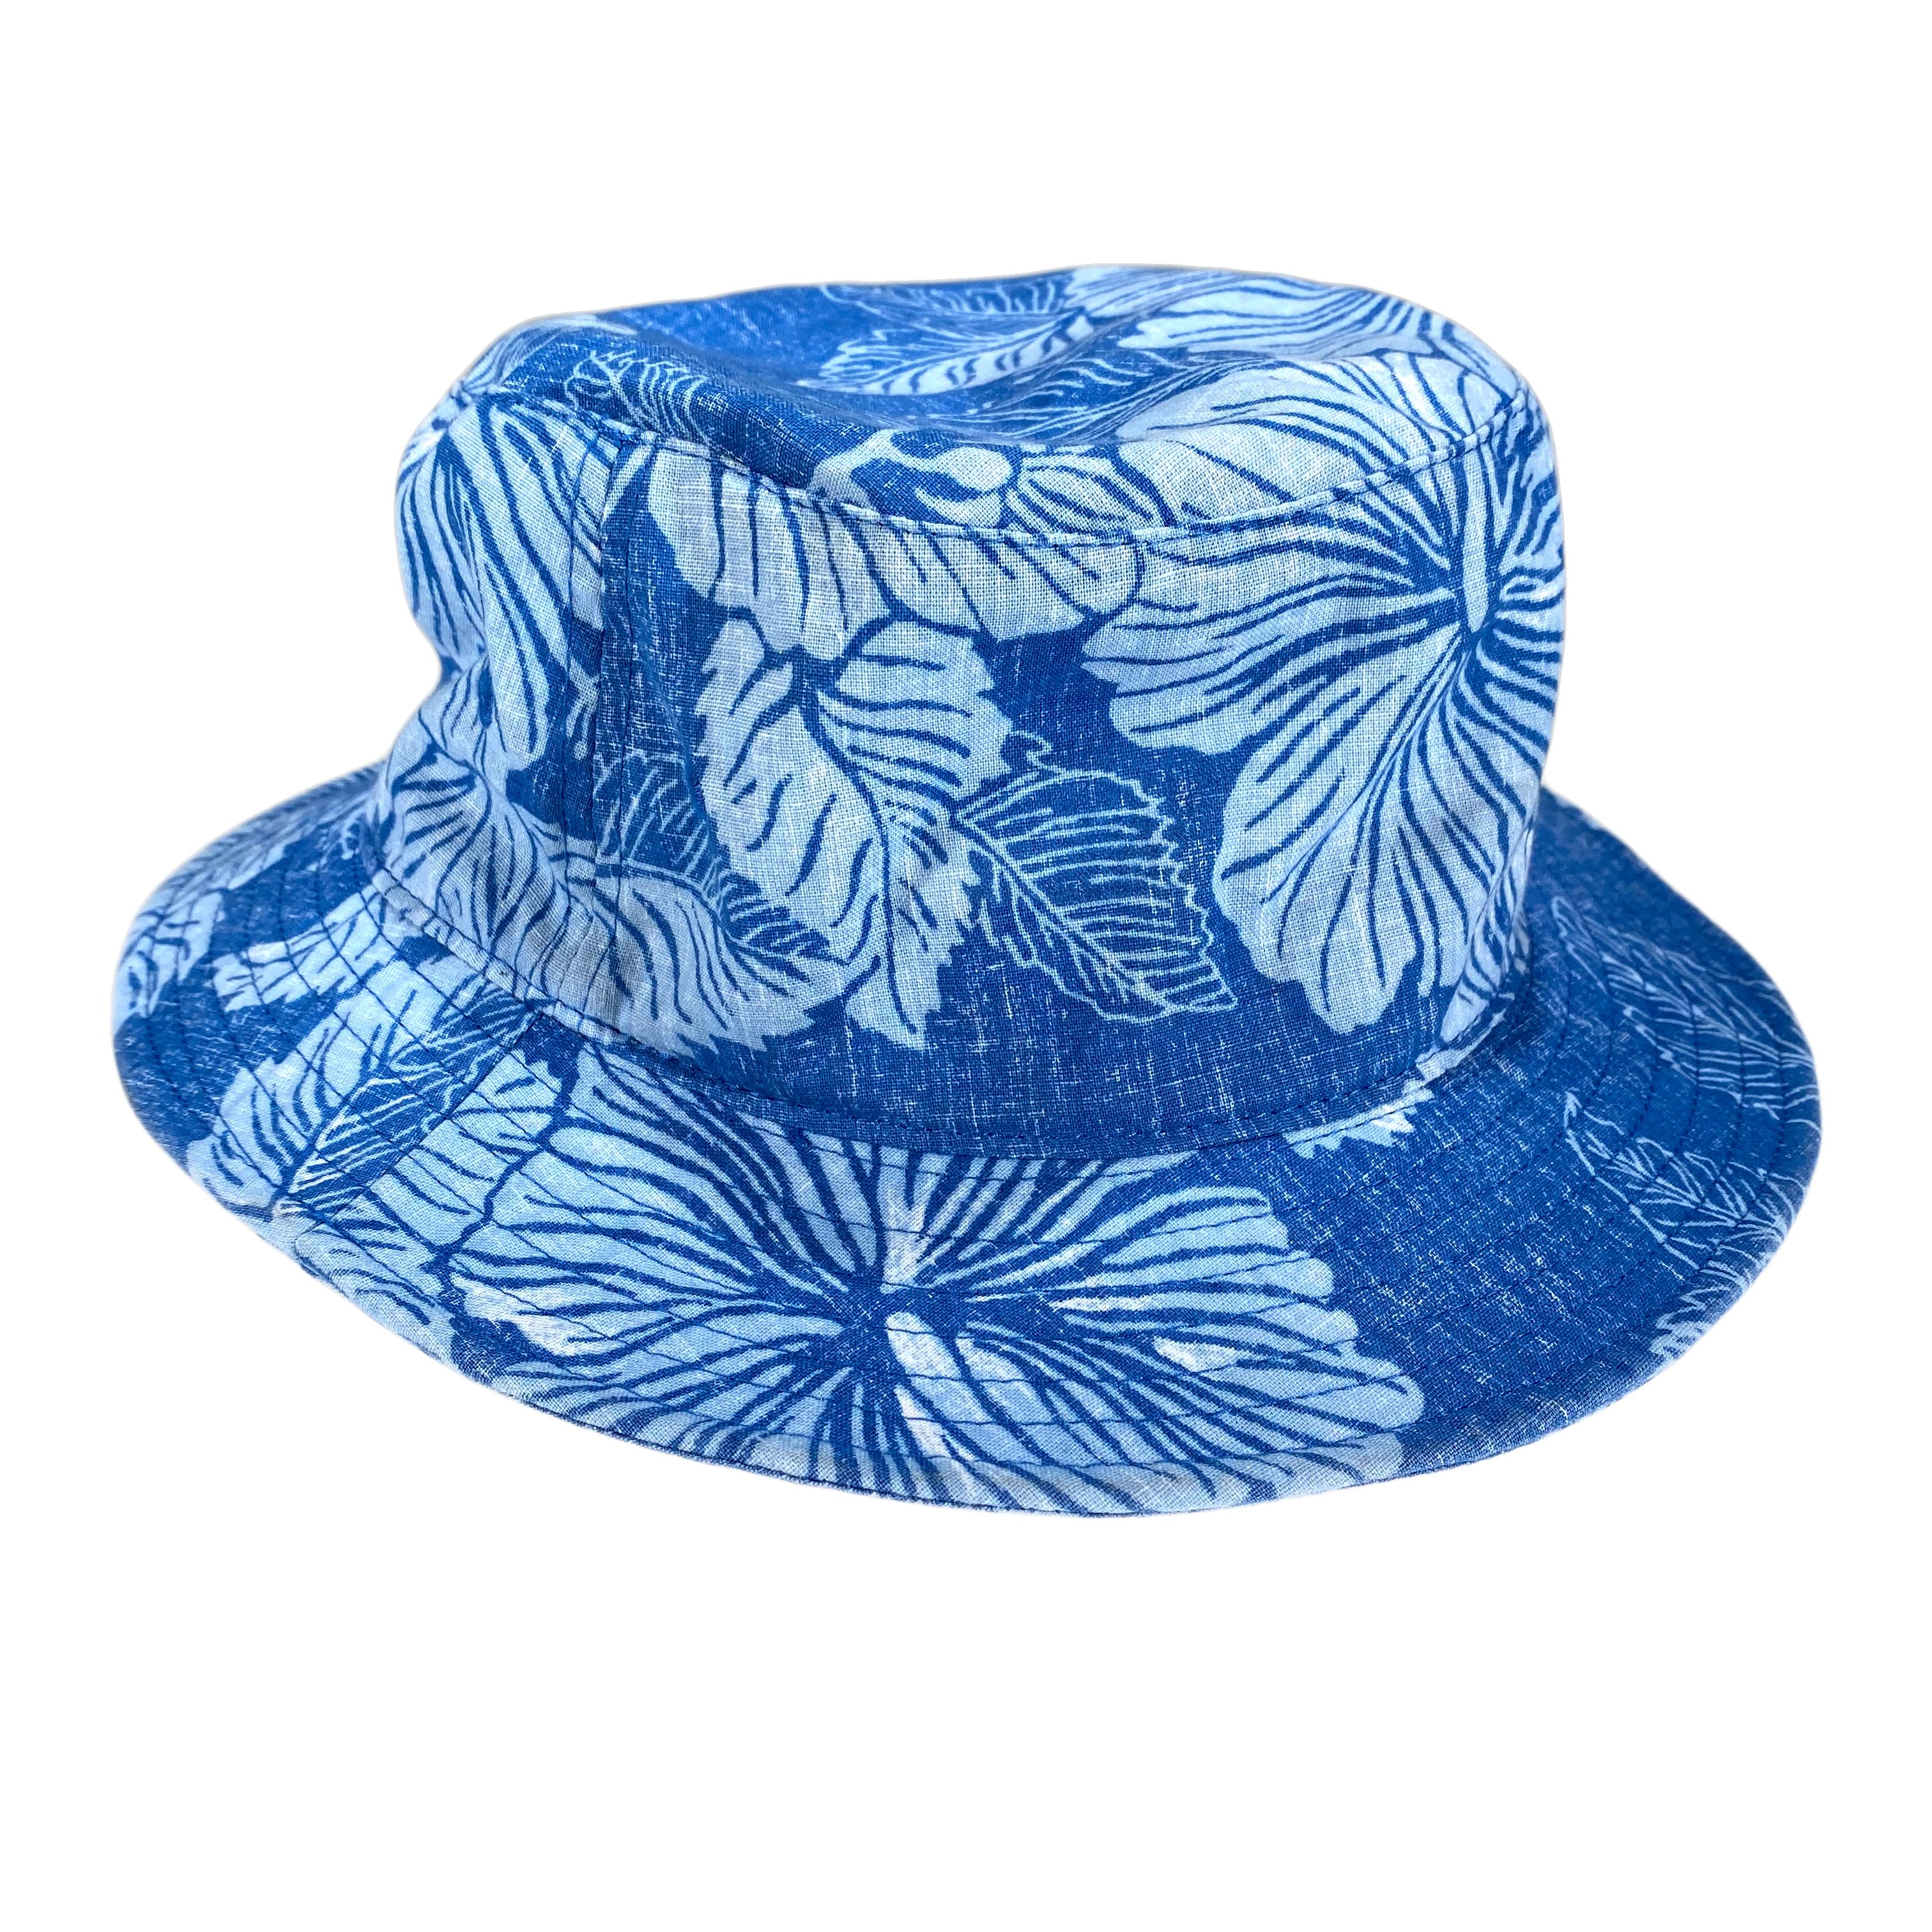 Aloha Biscus Bucket Hat by Reyn Spooner Ocean Blue S/M  805766146715